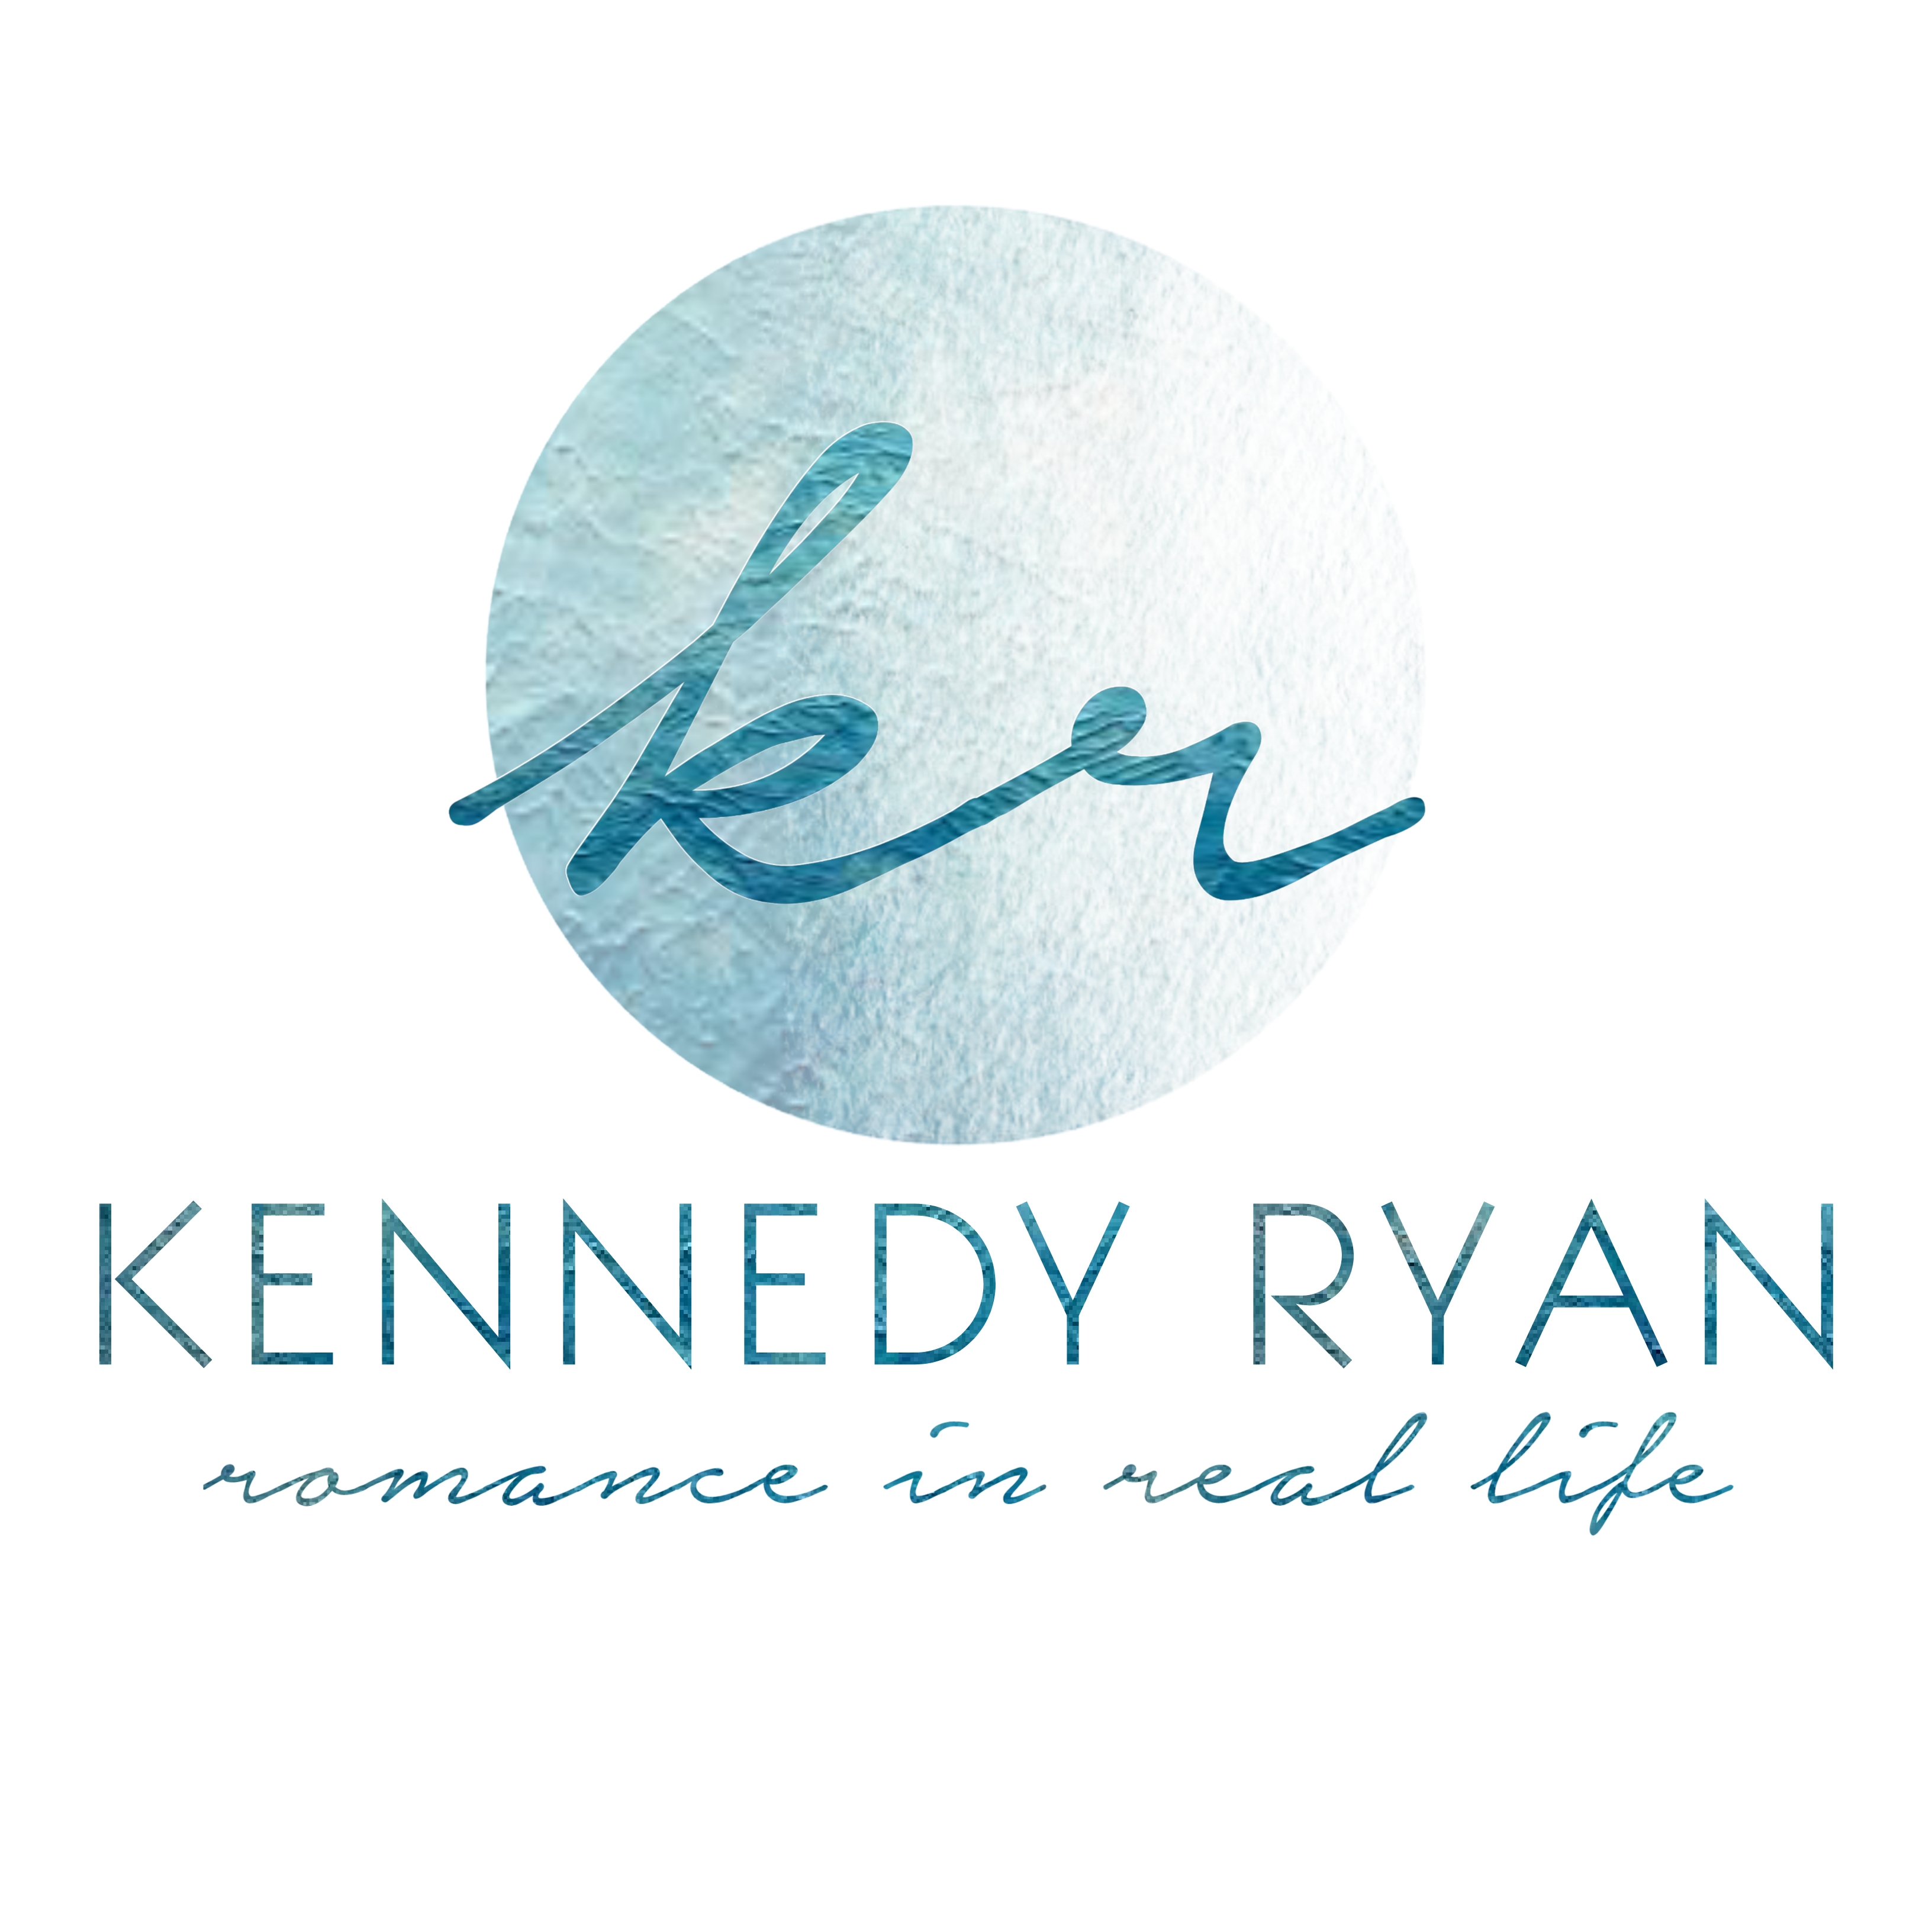 Kennedy Ryan Books - BookBub